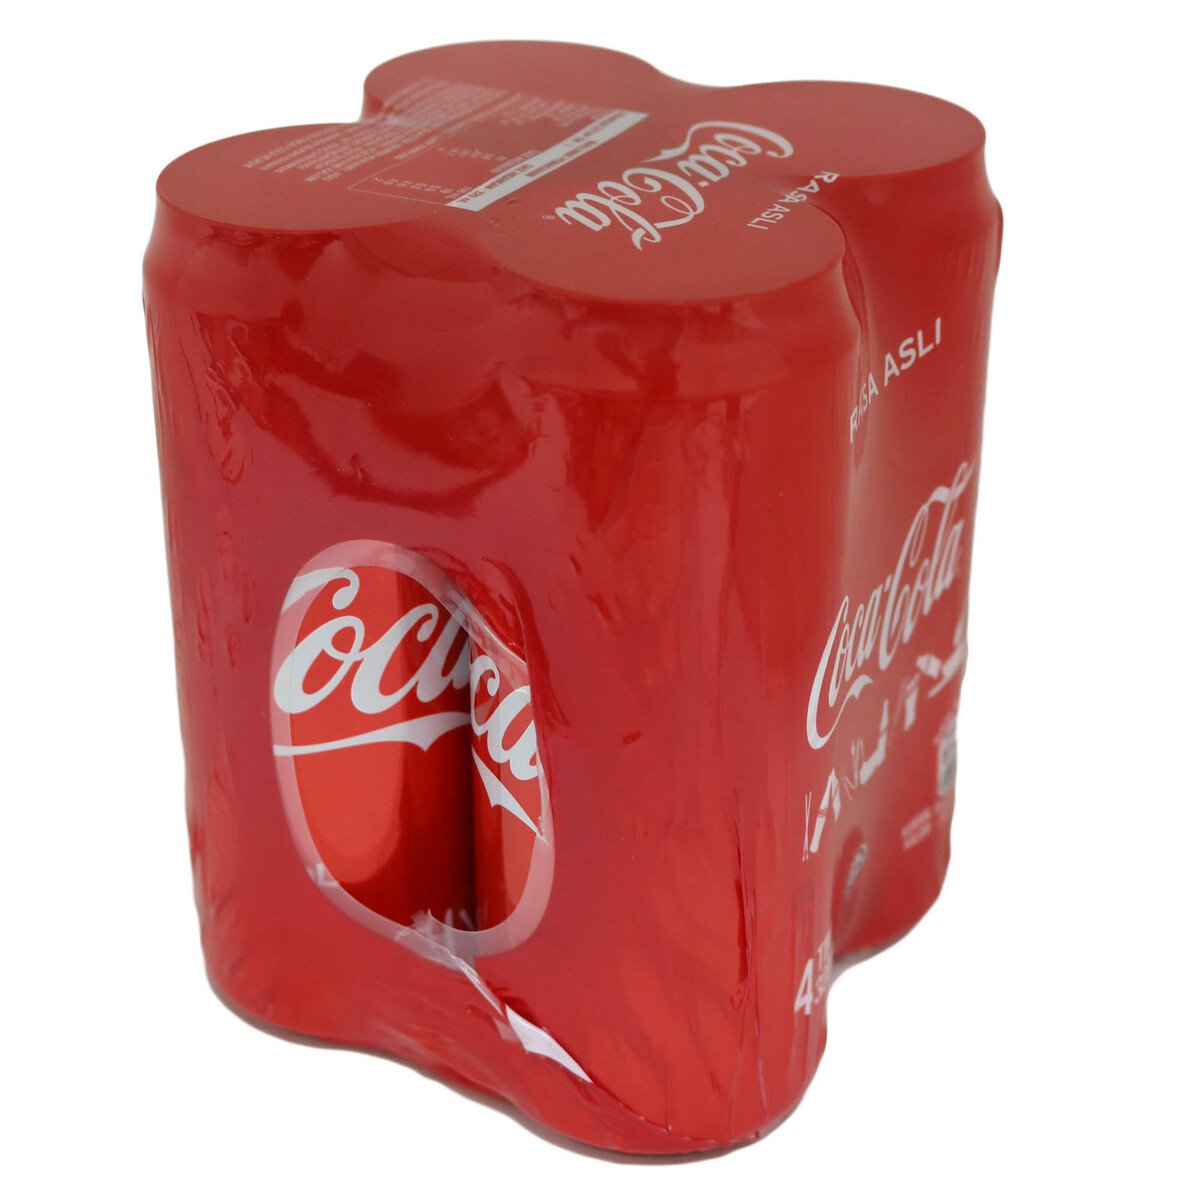 Coca Cola Rasa Asli 4pcs 320ml